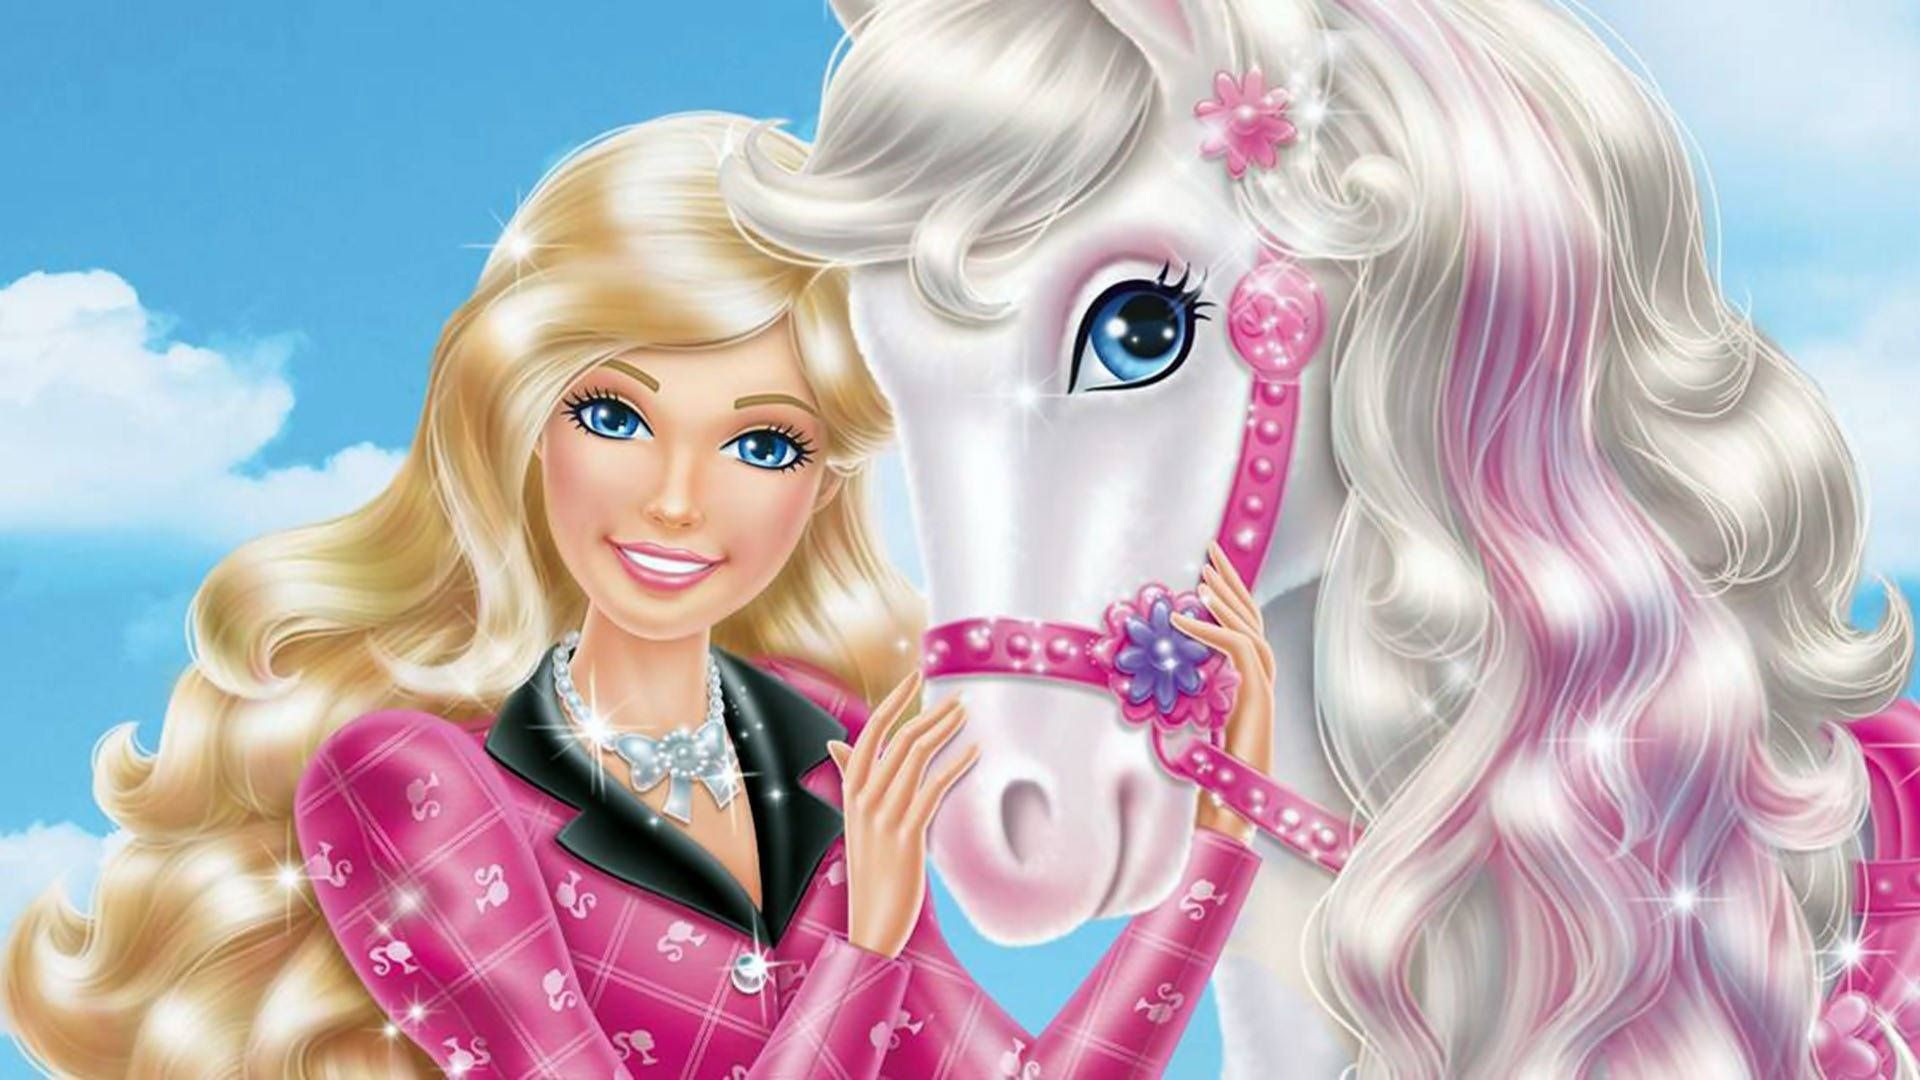 Barbie Image Animation